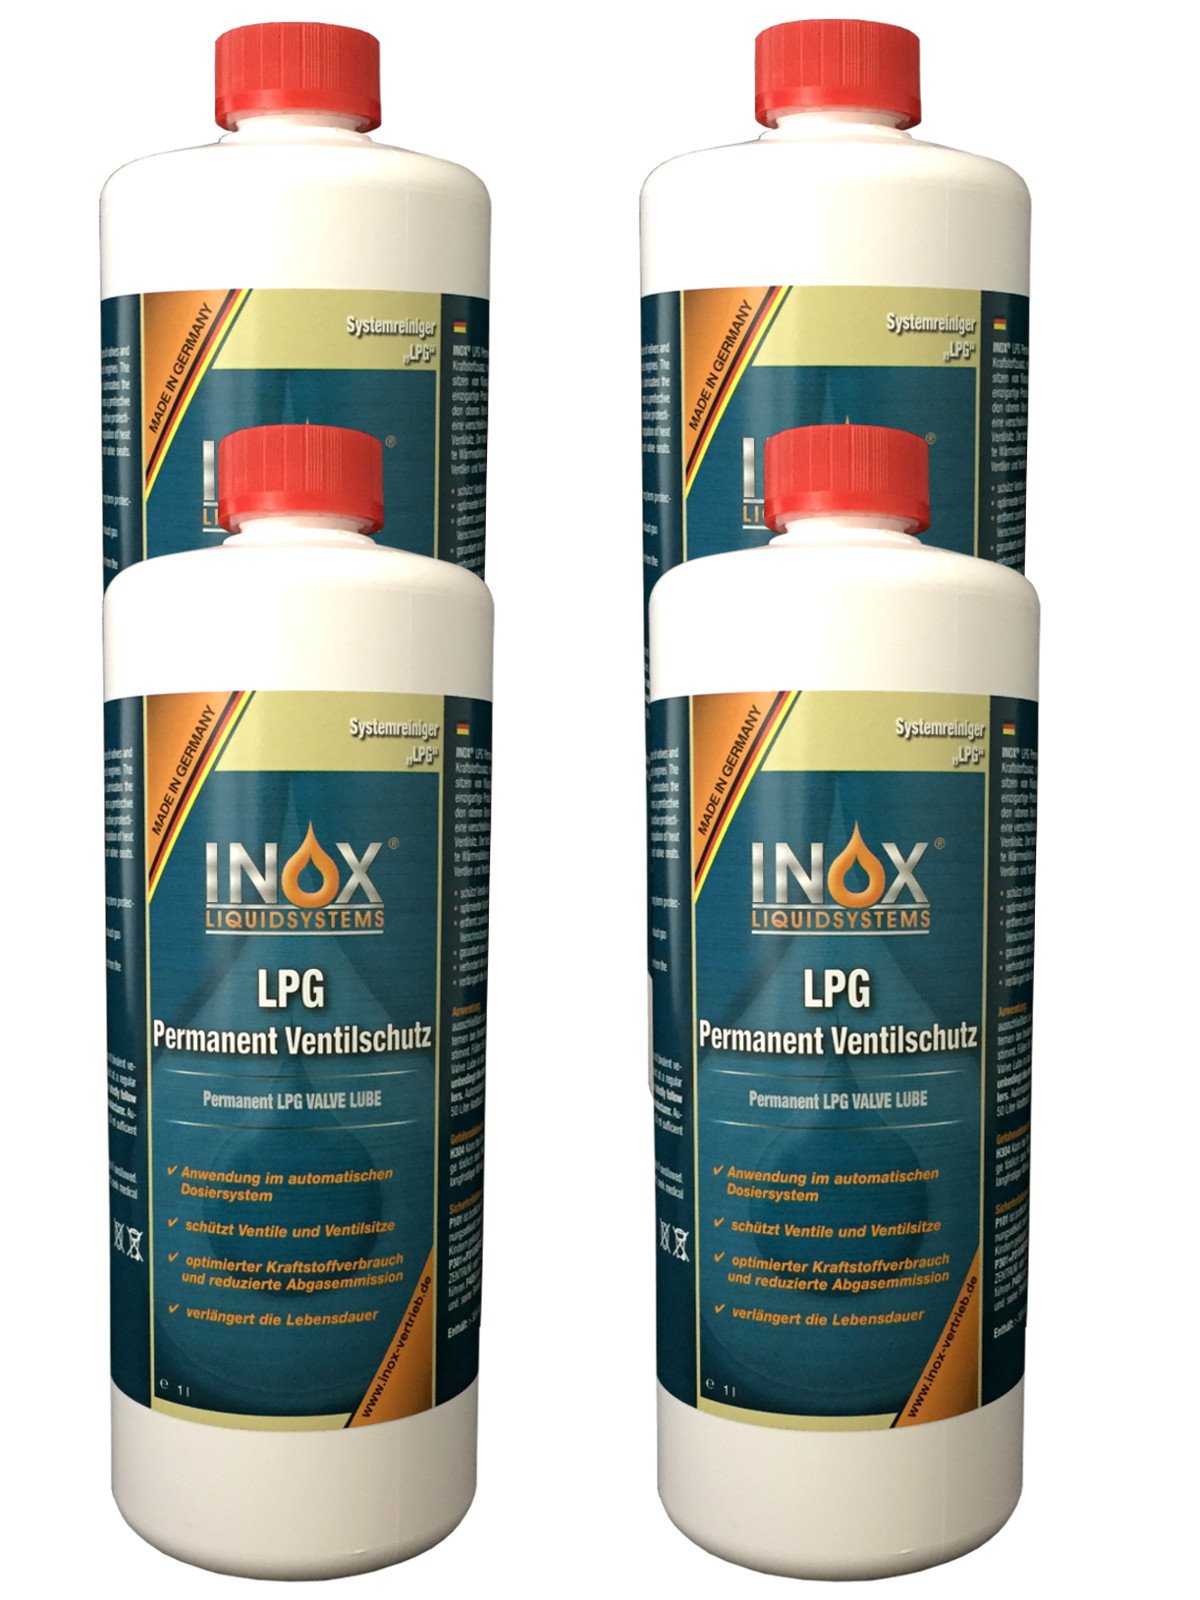 INOX® LPG Permanent Ventilschutz Additiv, 4 x 1 Liter - Zusatz für Autos mit Gasanlage von INOX-LIQUIDSYSTEMS